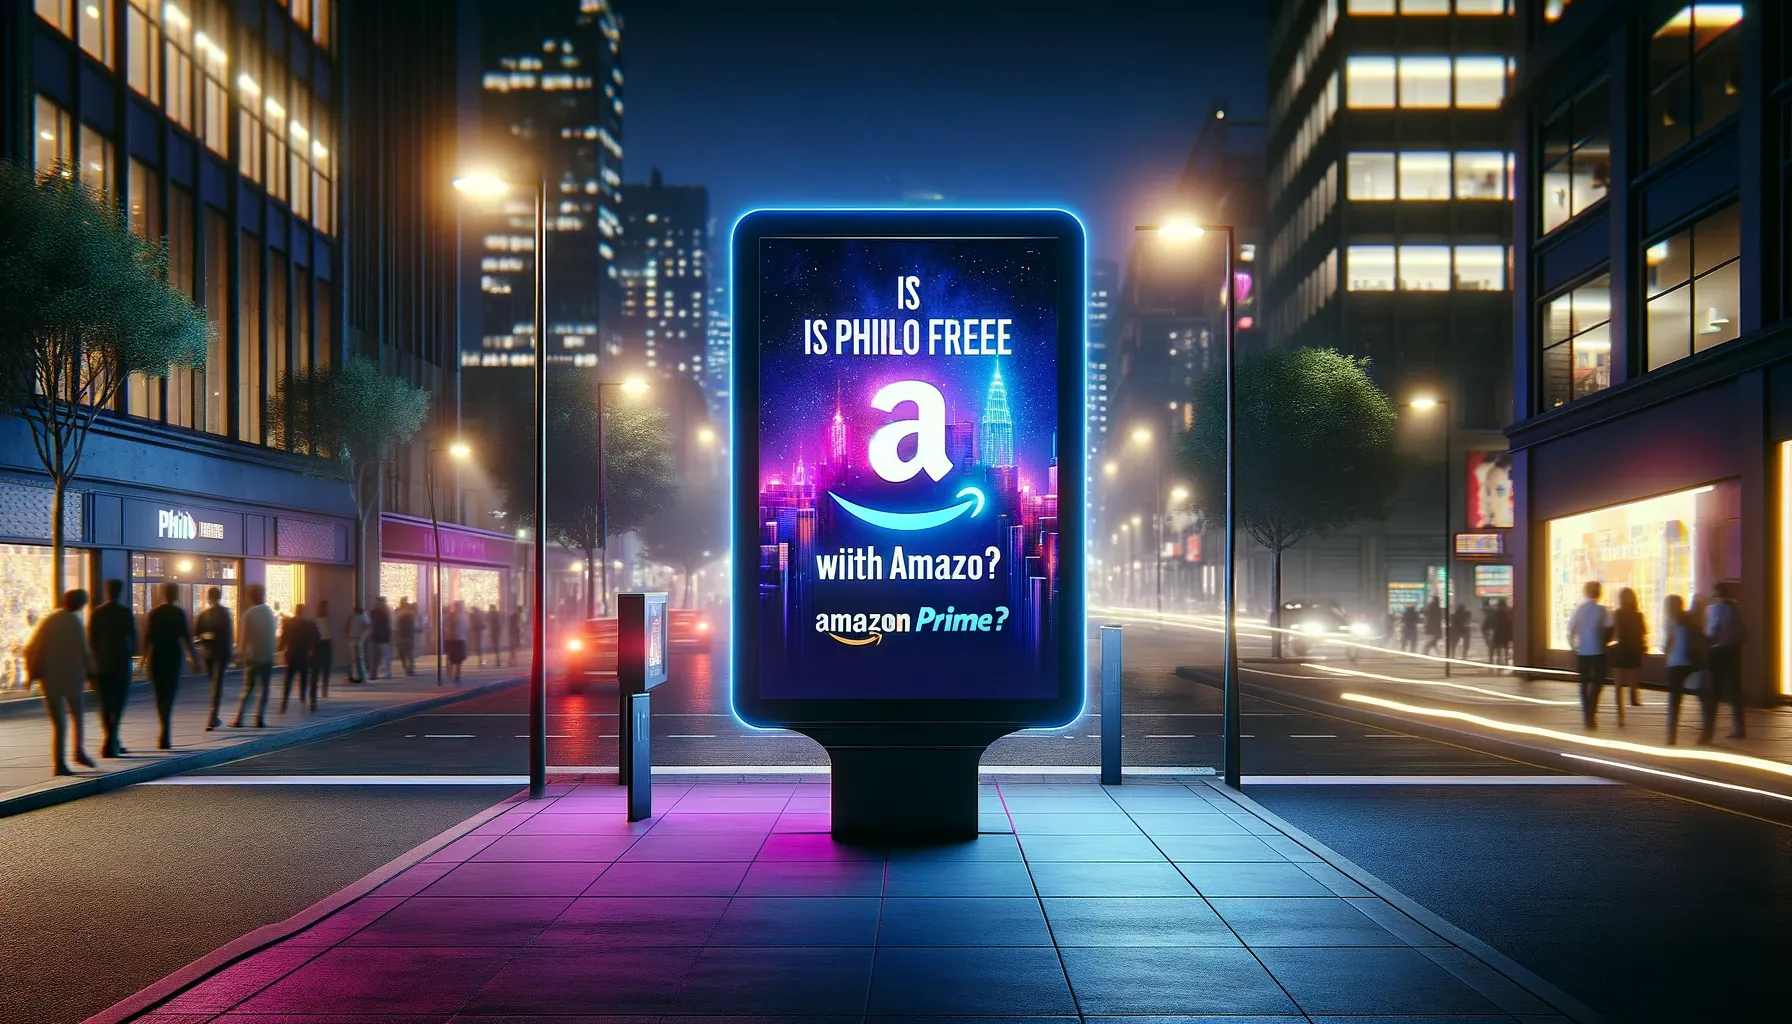 Is Philo Free with Amazon Prime